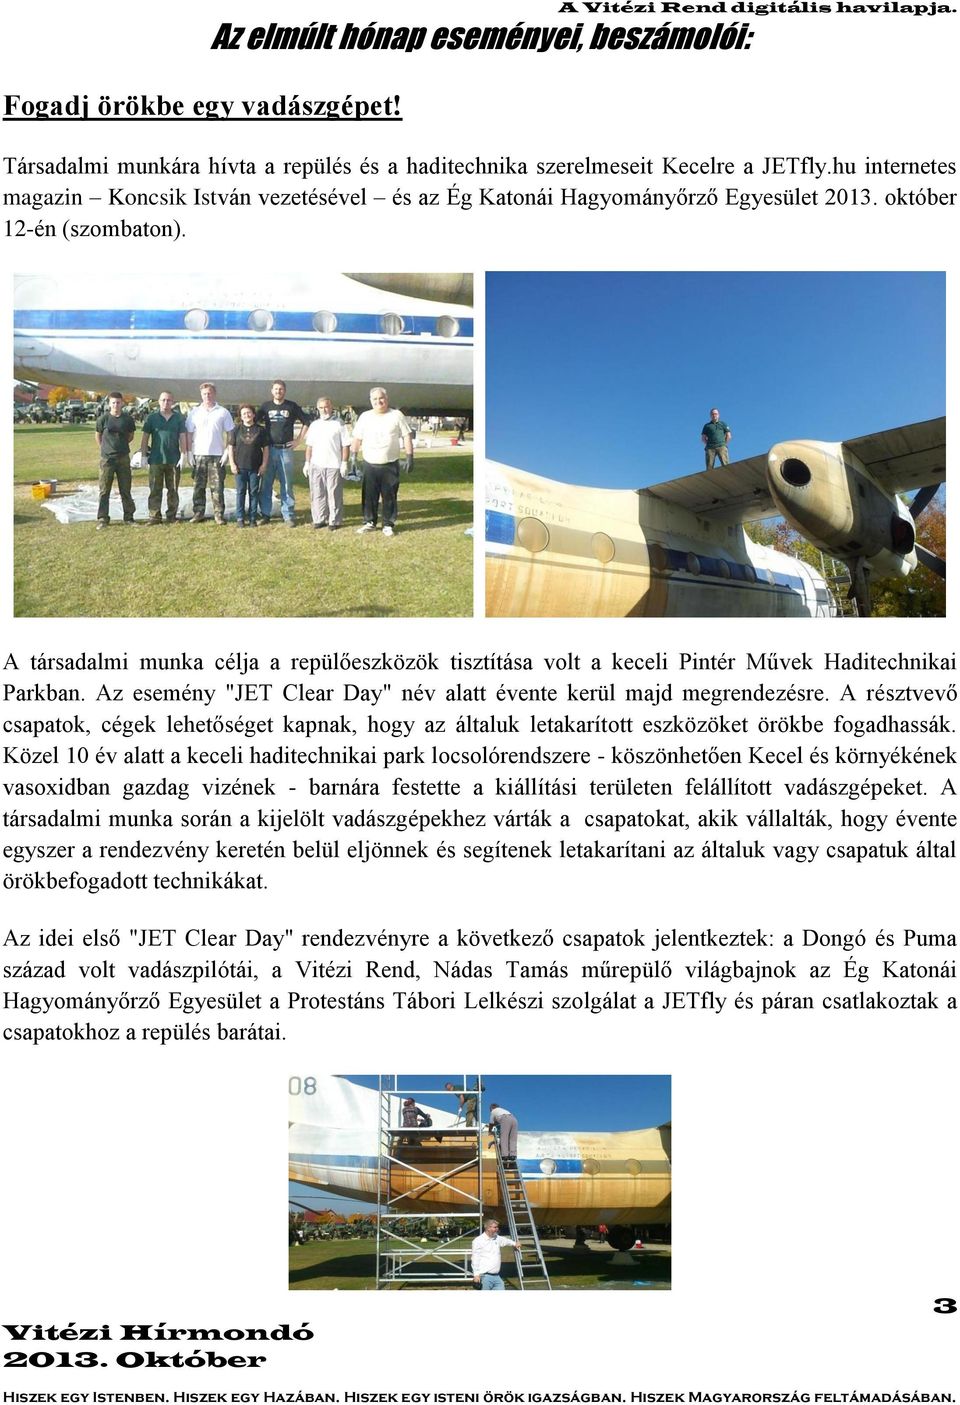 A társadalmi munka célja a repülőeszközök tisztítása volt a keceli Pintér Művek Haditechnikai Parkban. Az esemény "JET Clear Day" név alatt évente kerül majd megrendezésre.